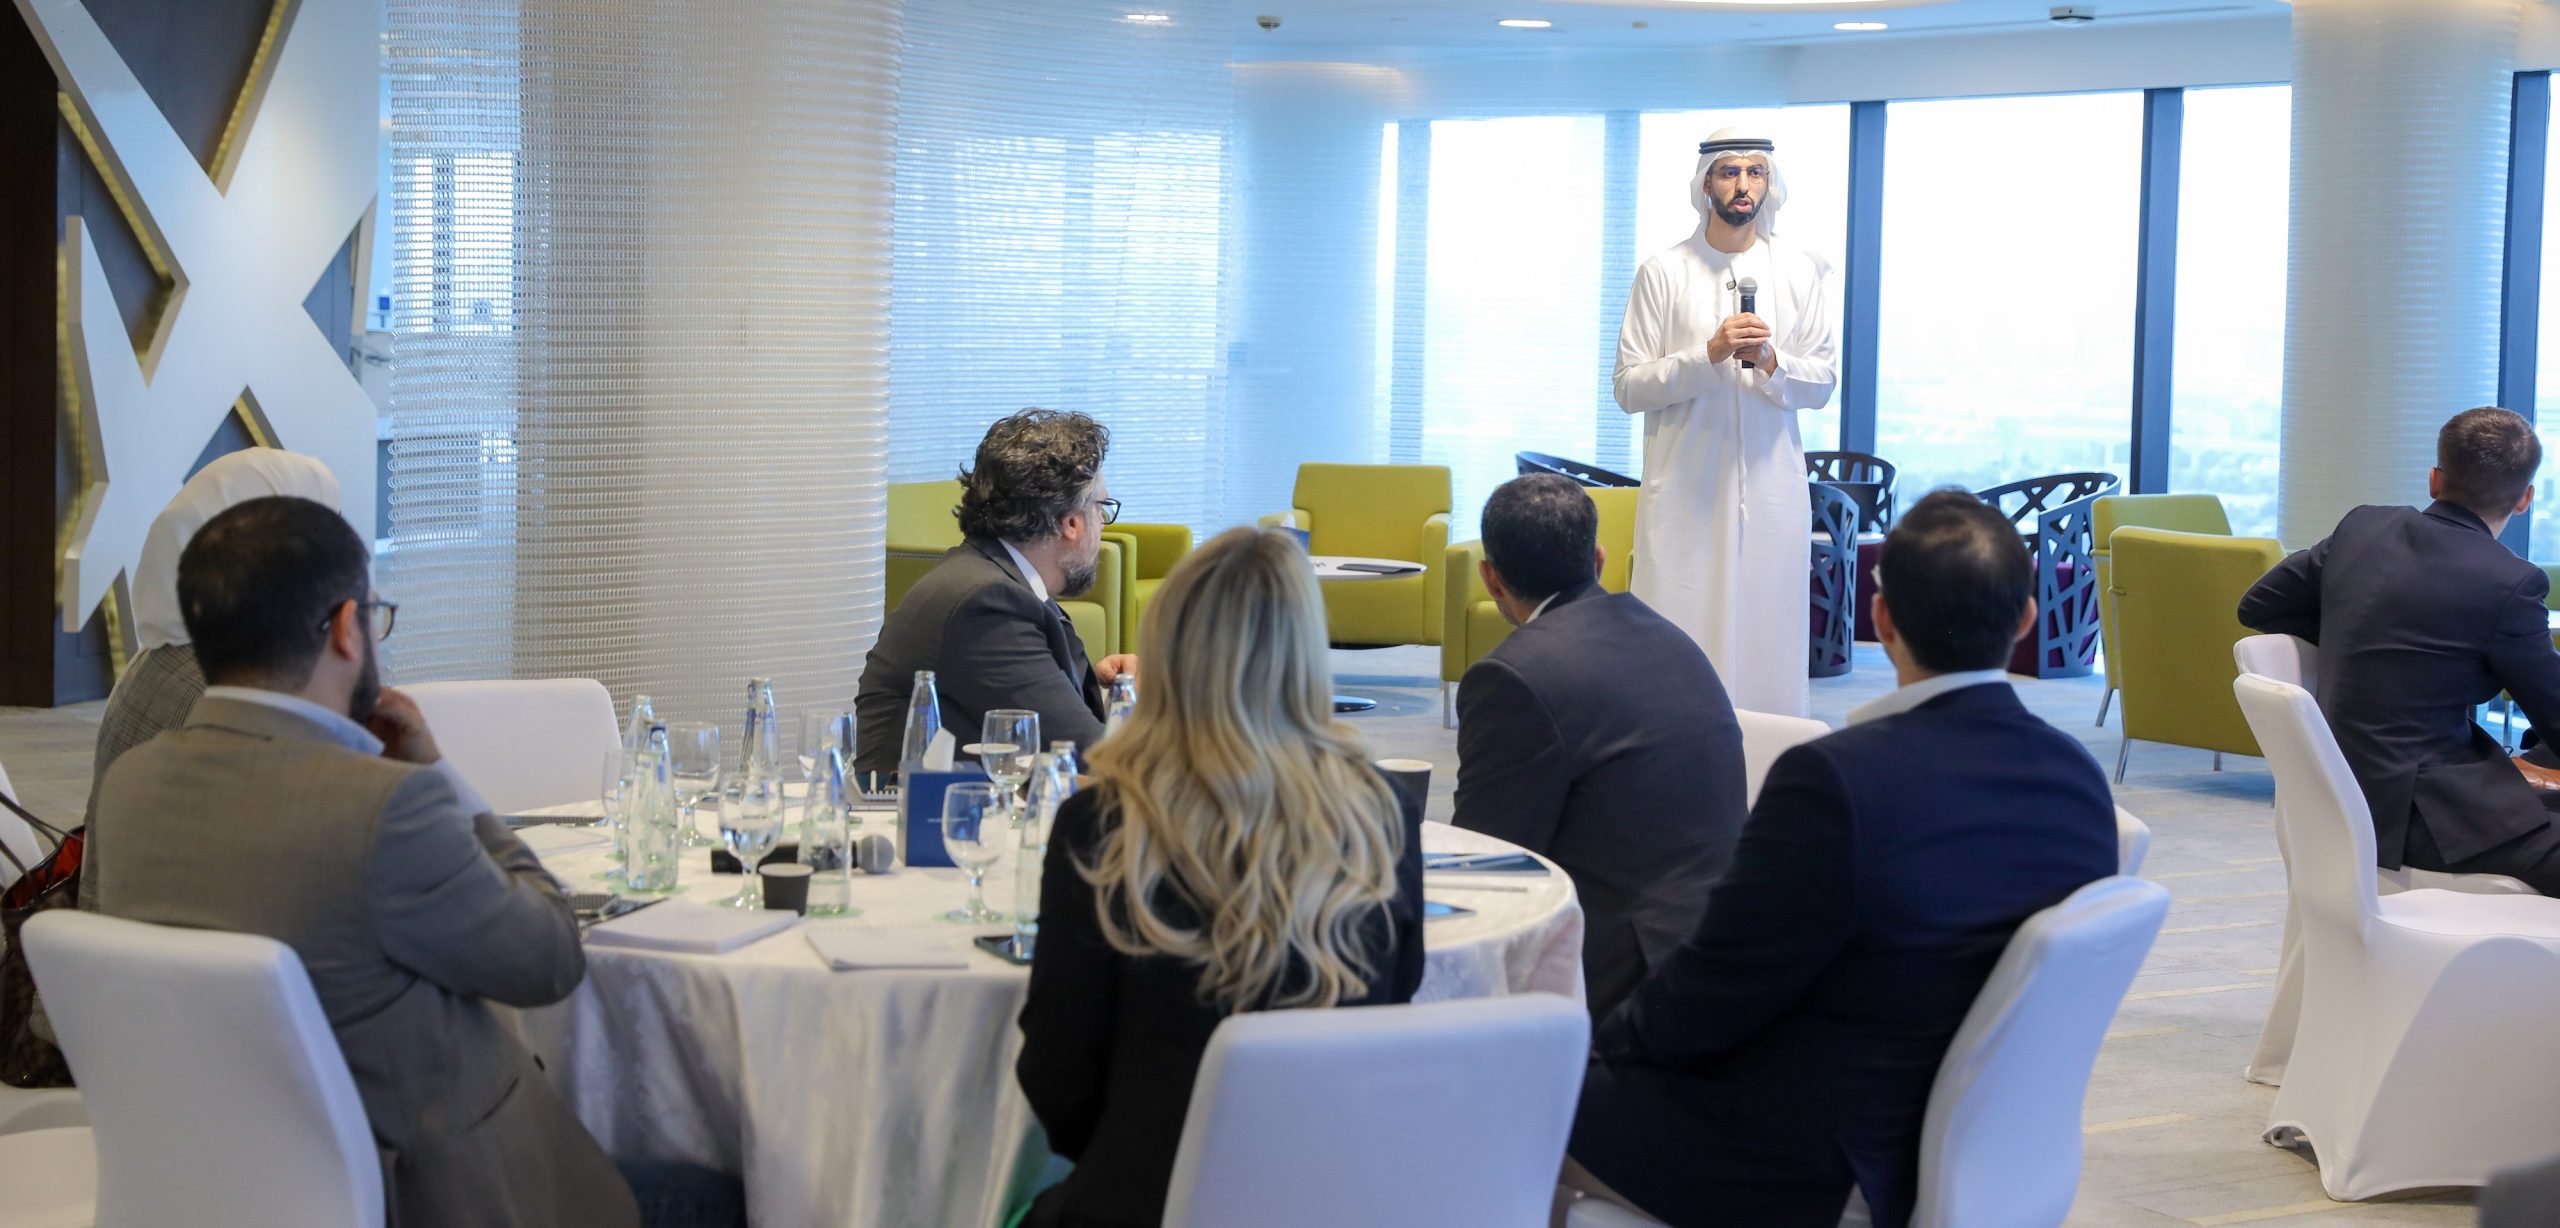 غرفة دبي للاقتصاد الرقمي تطلق سلسلة من الورش التفاعلية بالتعاون مع القطاع الخاص لمناقشة تحديات وفرص القطاعات